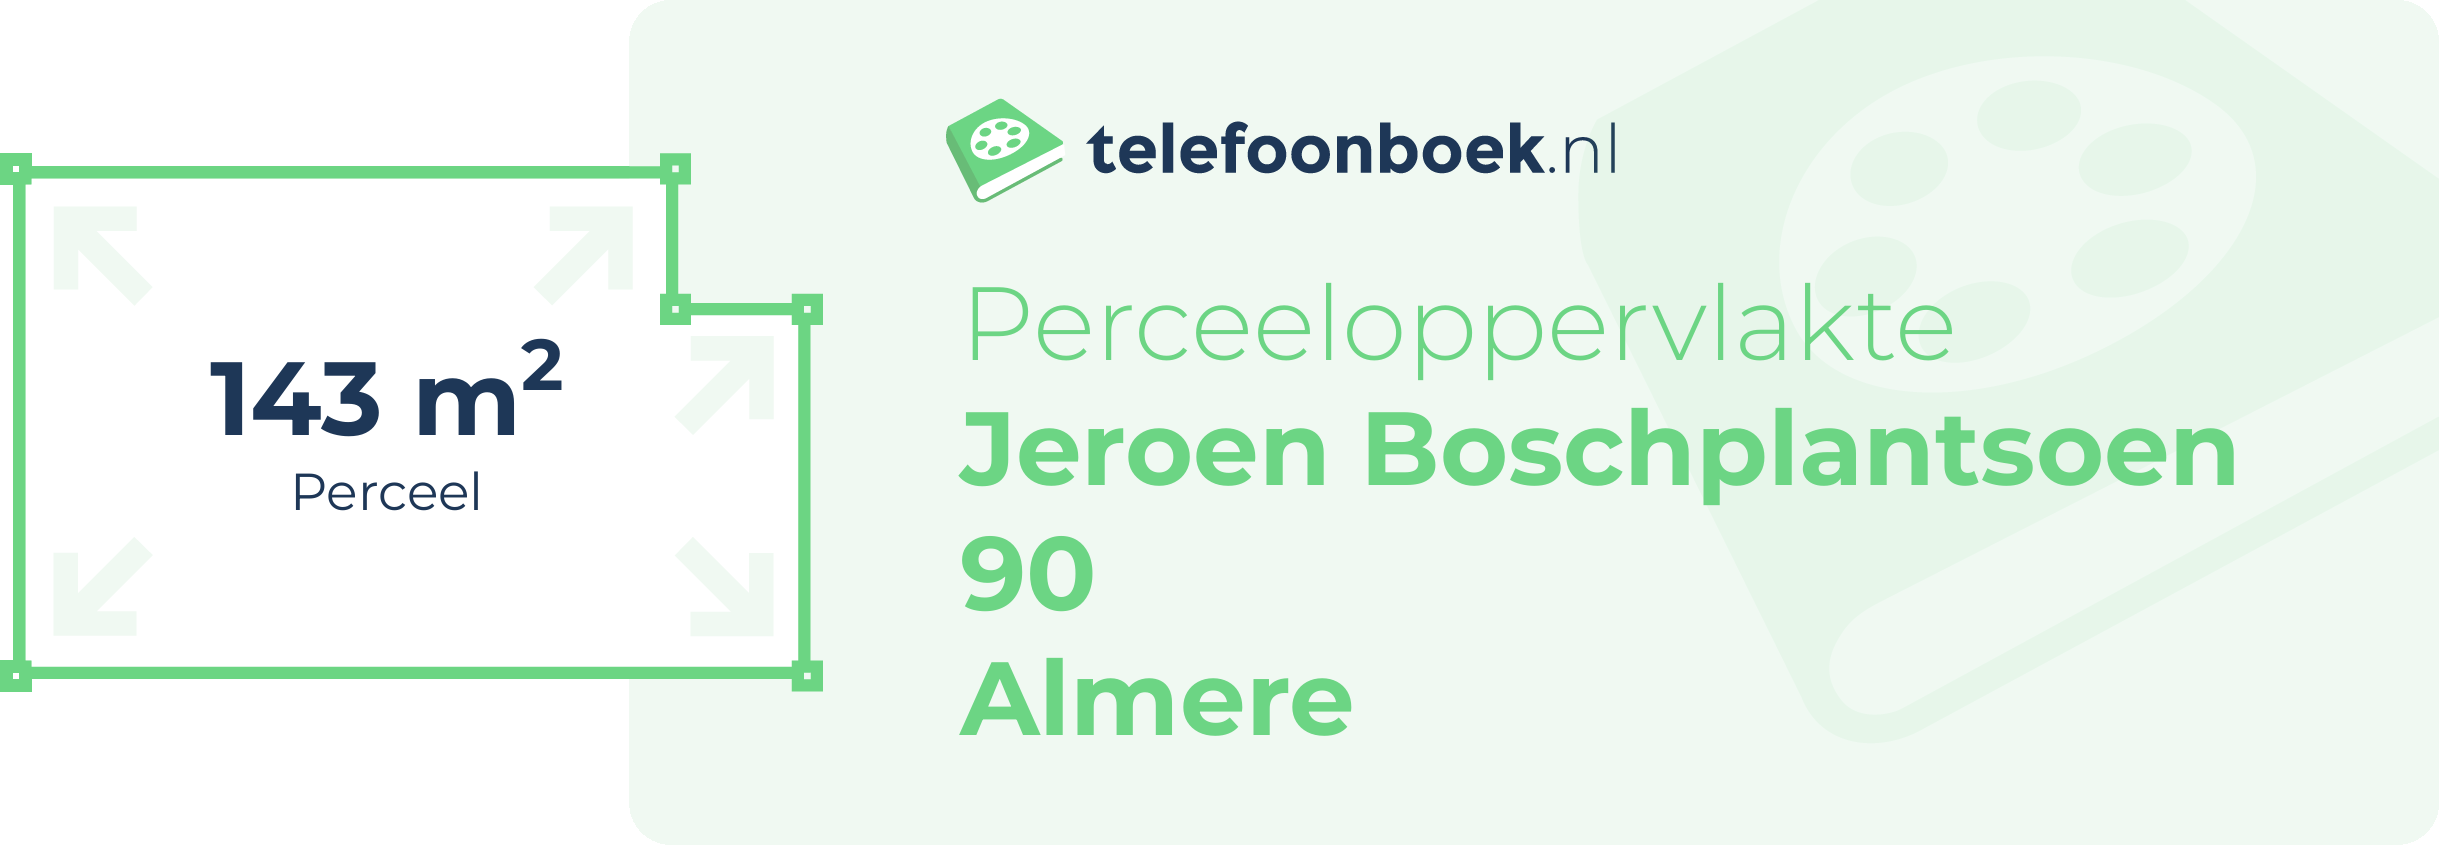 Perceeloppervlakte Jeroen Boschplantsoen 90 Almere